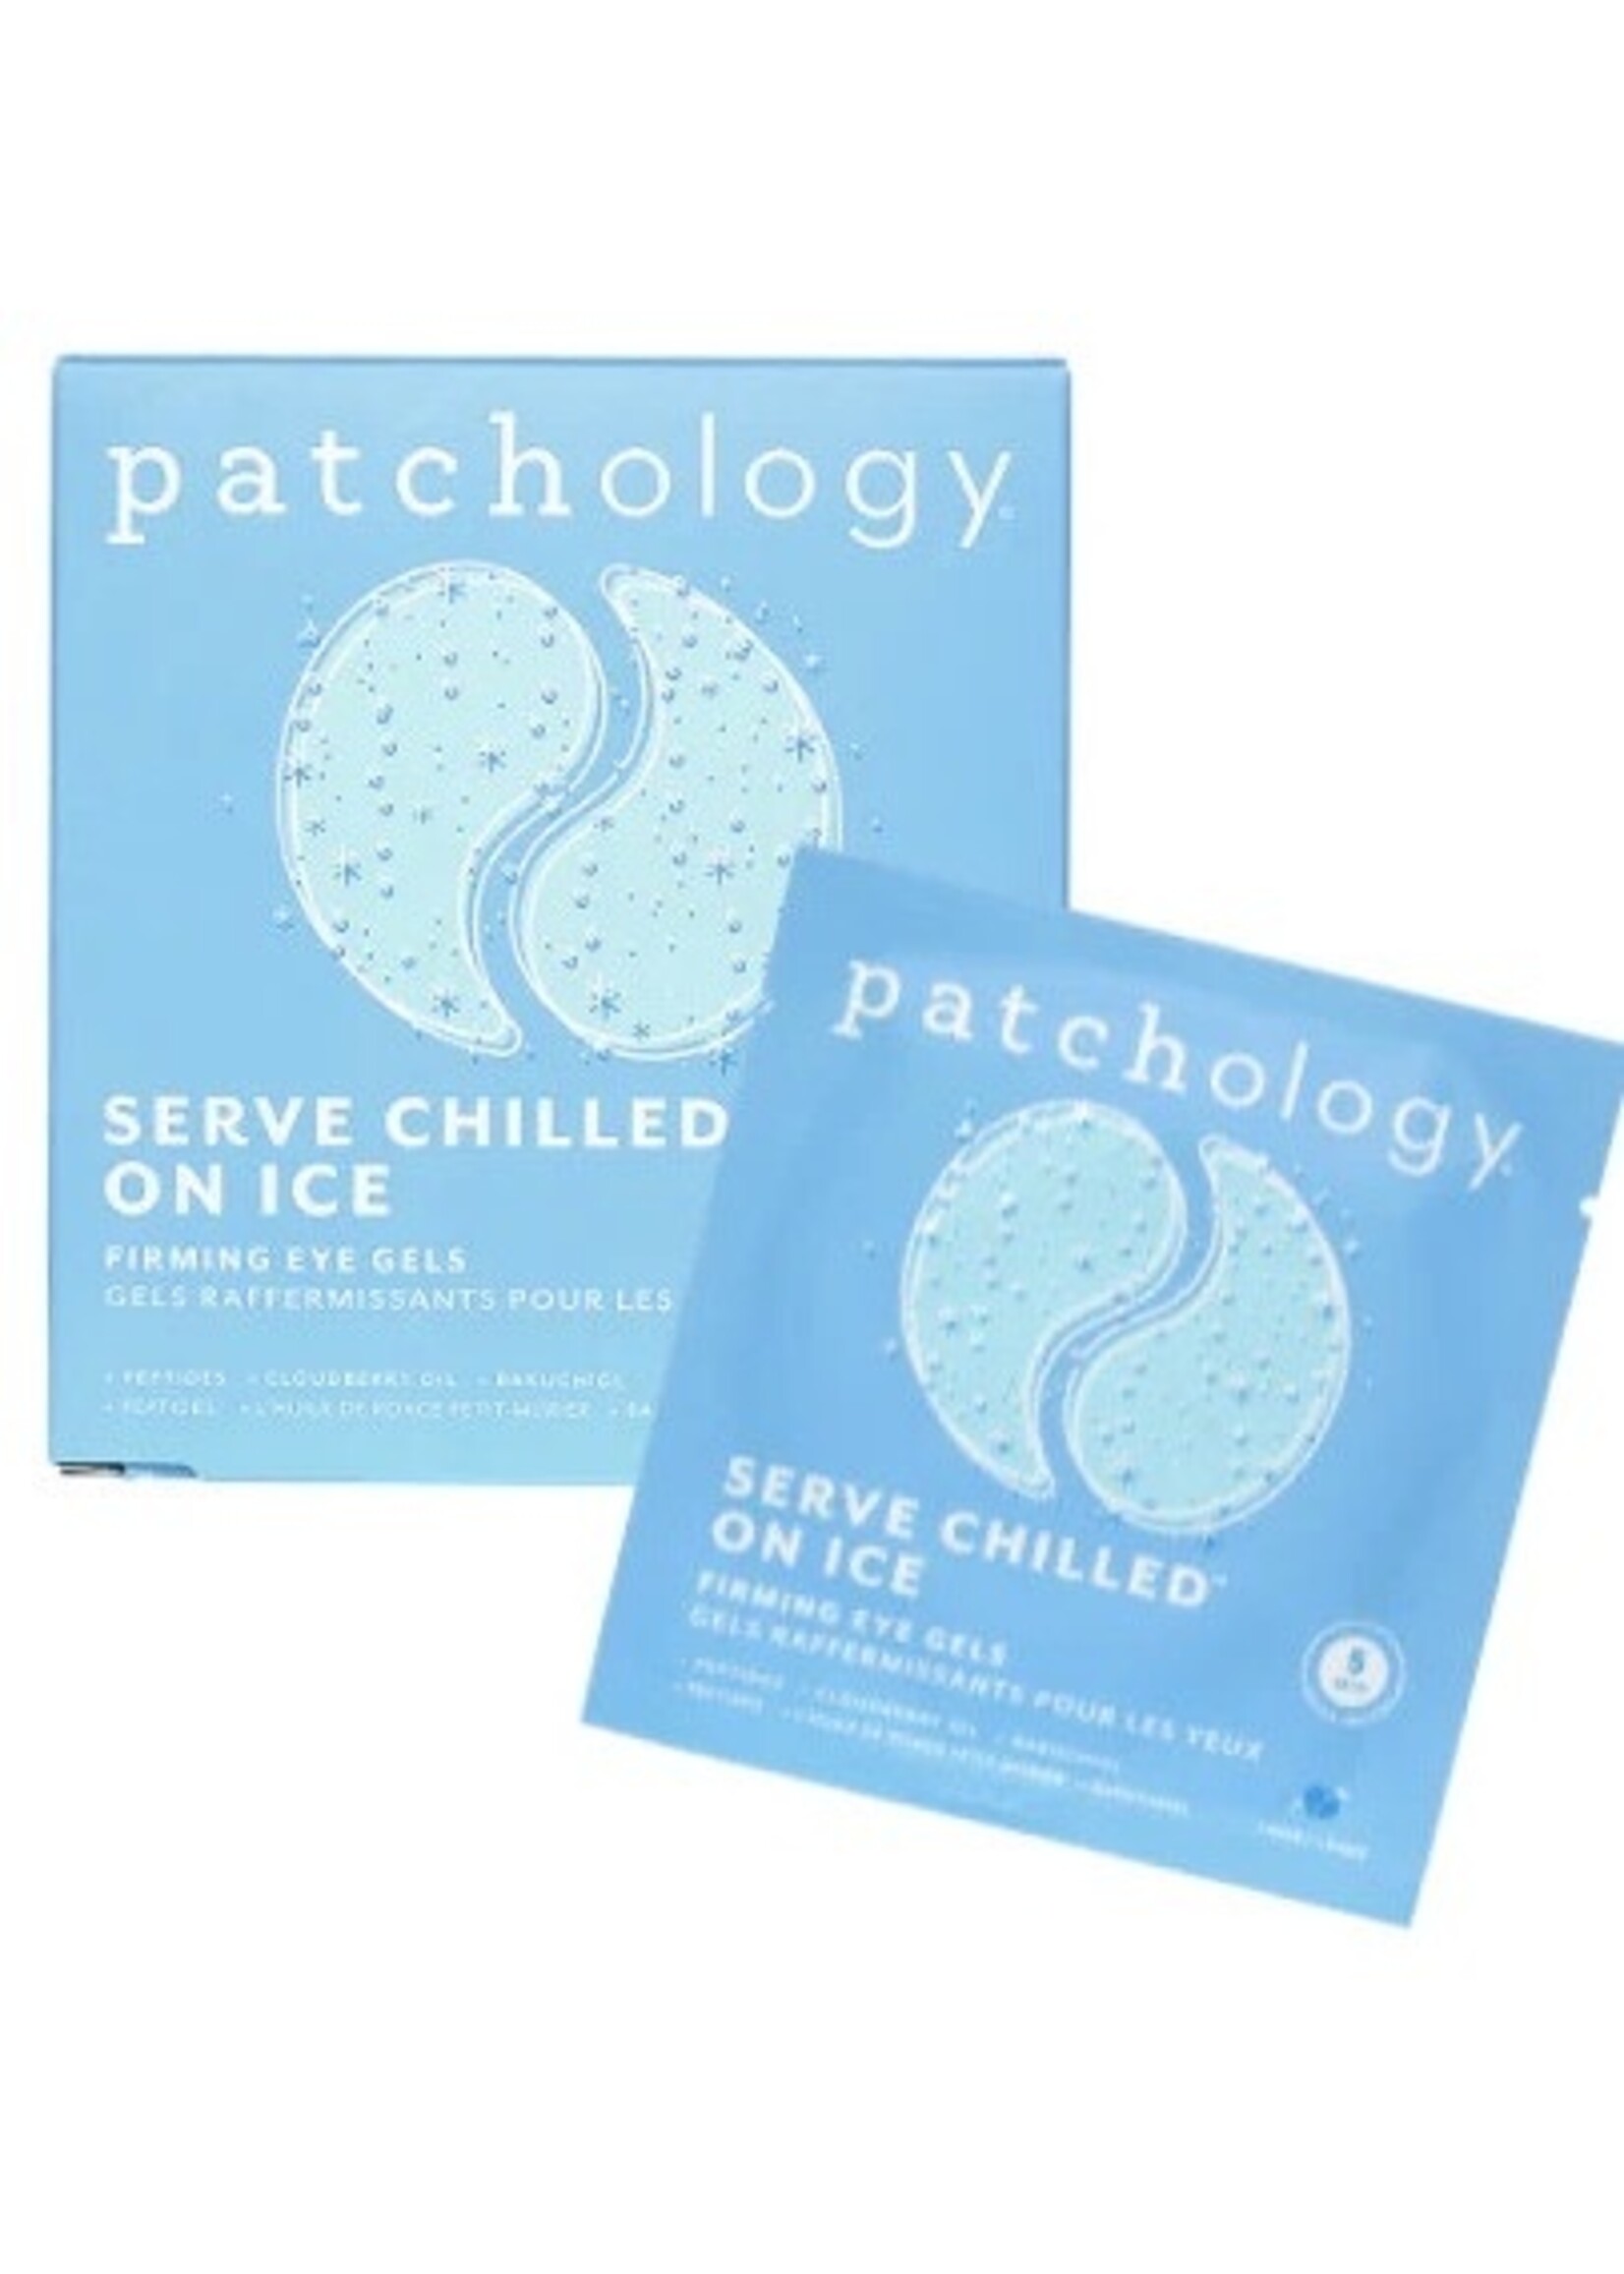 Patchology Paquet de 5 masques pour les yeux  par Patchology